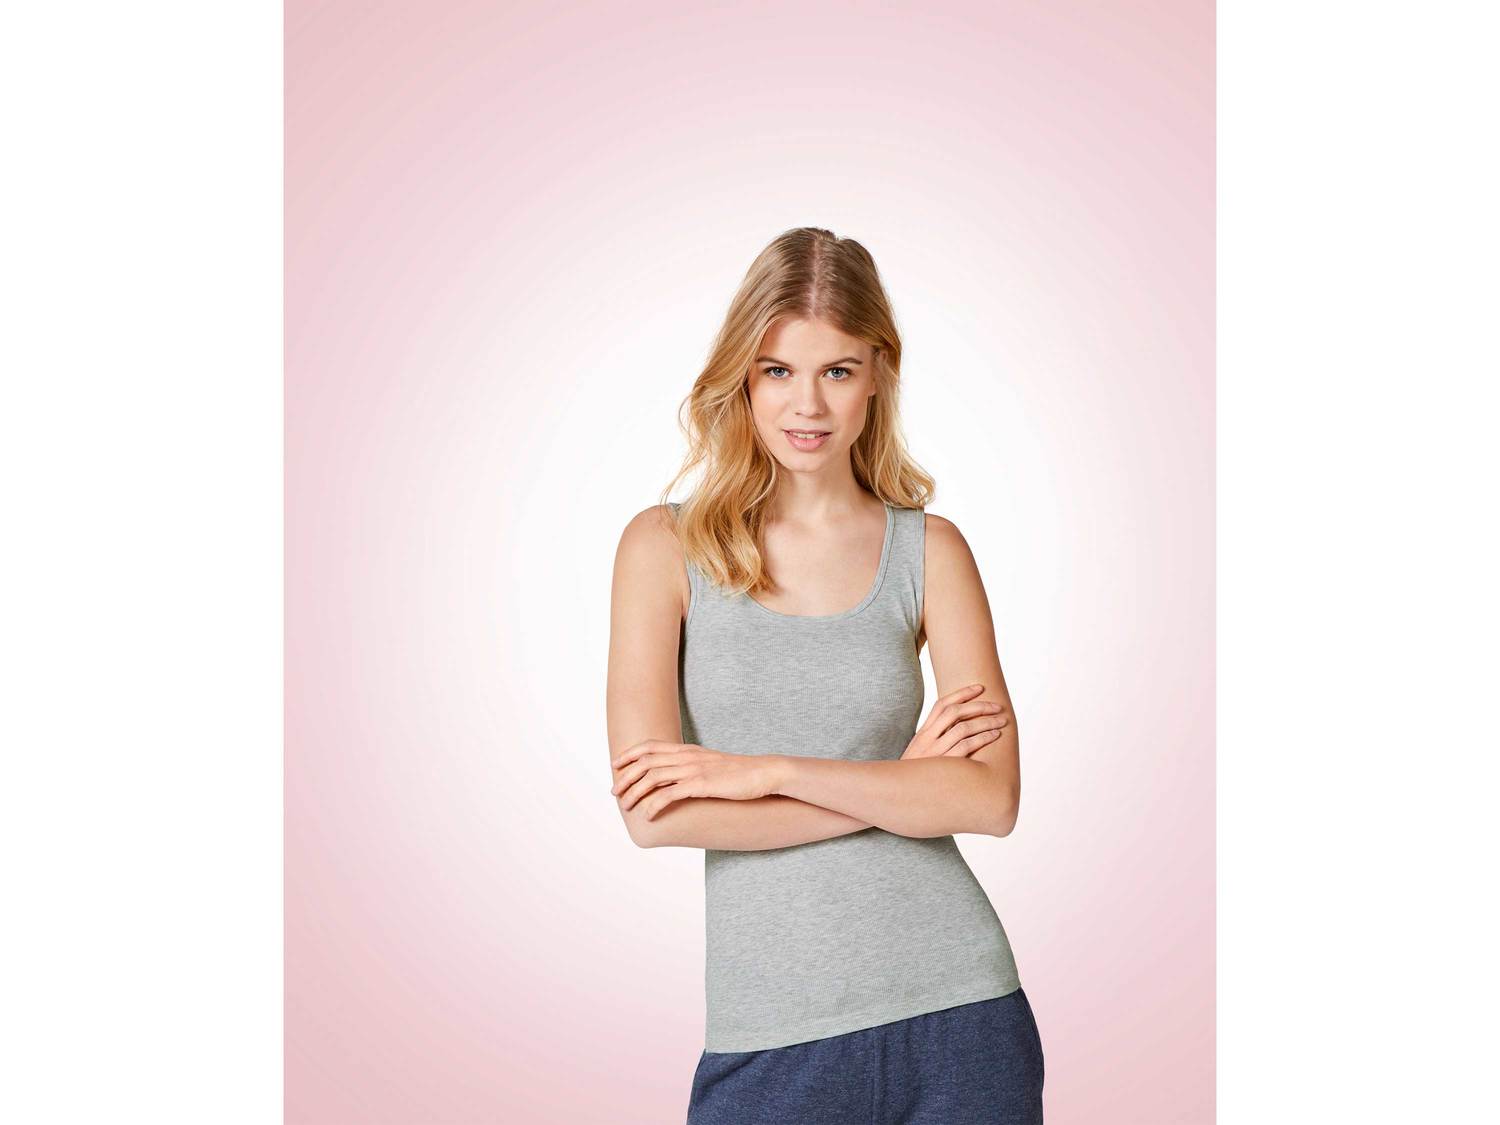 Koszulka na ramiączkach Esmara Lingerie, cena 13,99 PLN 
- rozmiary: S-L
- 92% ...